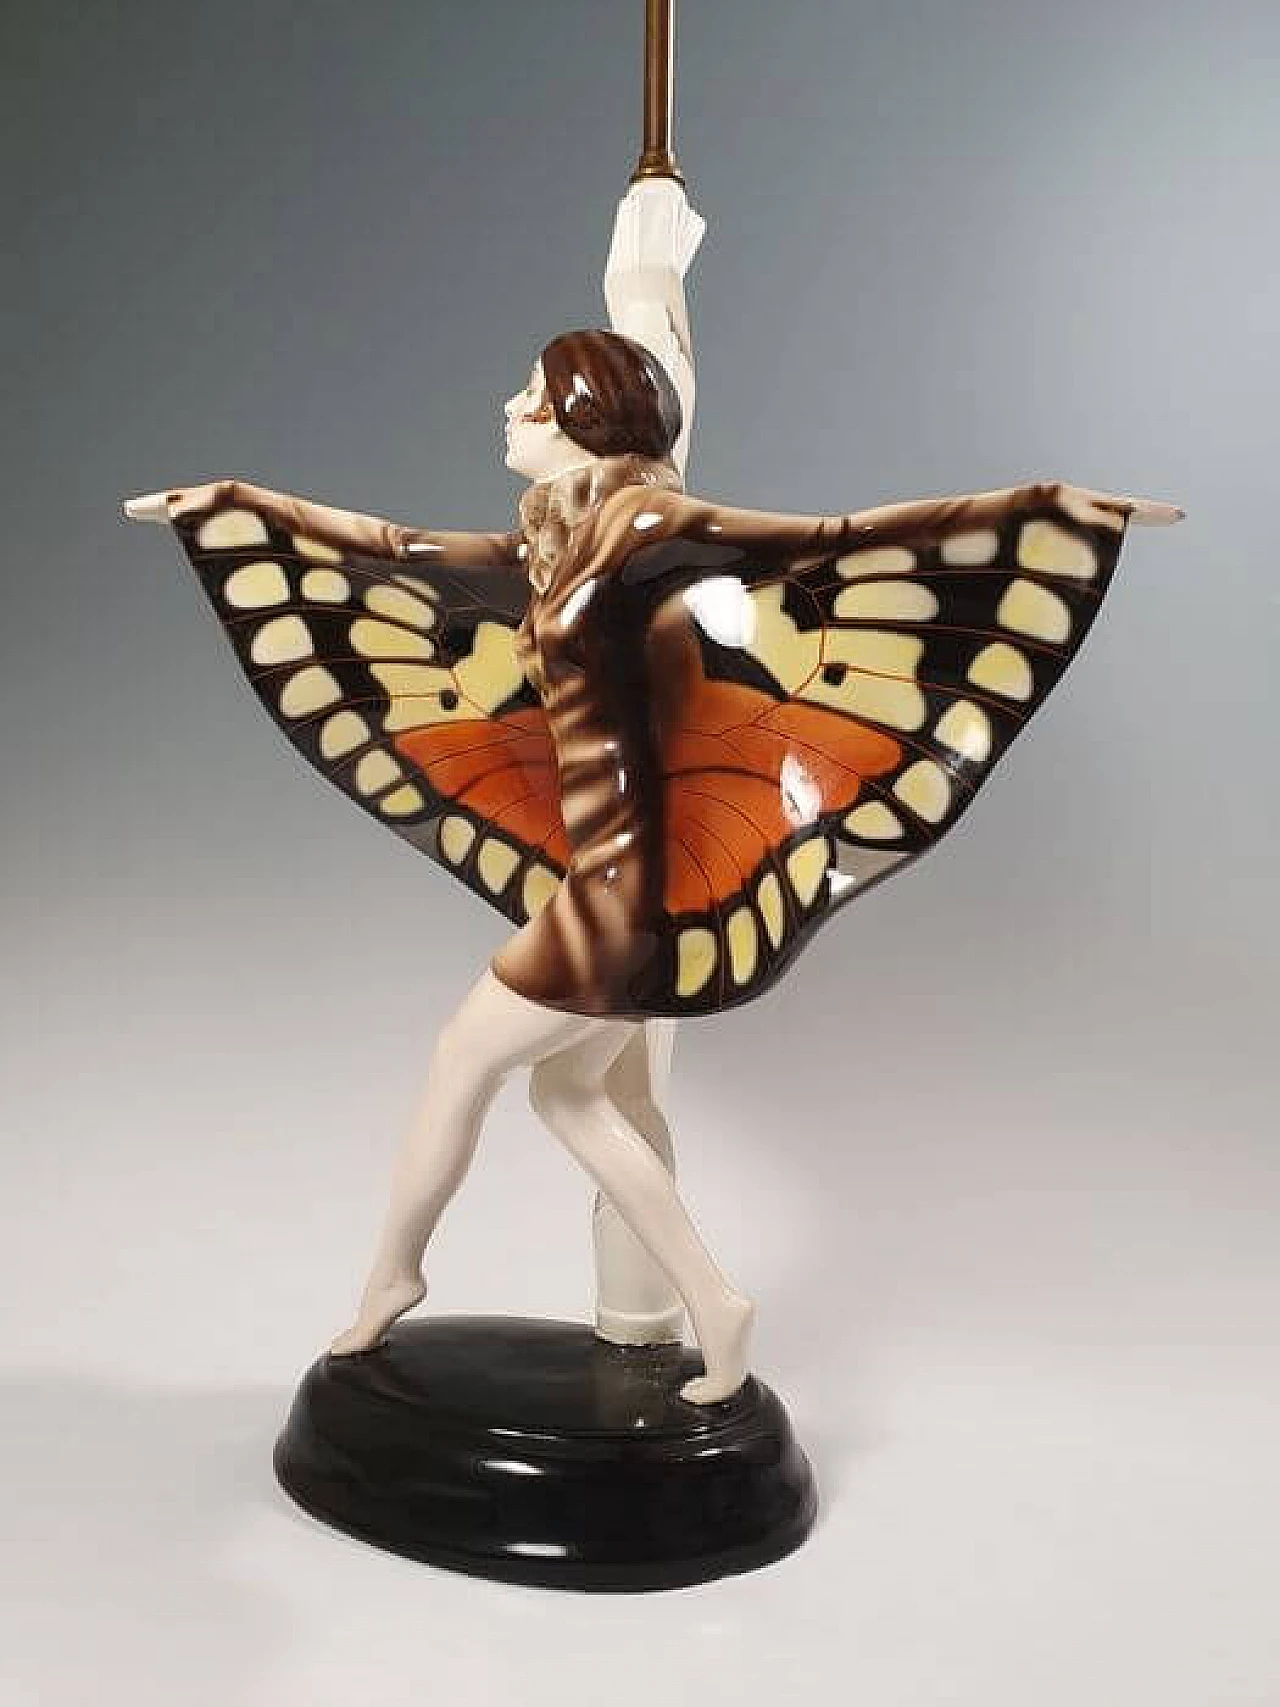 Lampada in ceramica Goldscheider a forma di ballerina firmata Lorenzi, '900 12